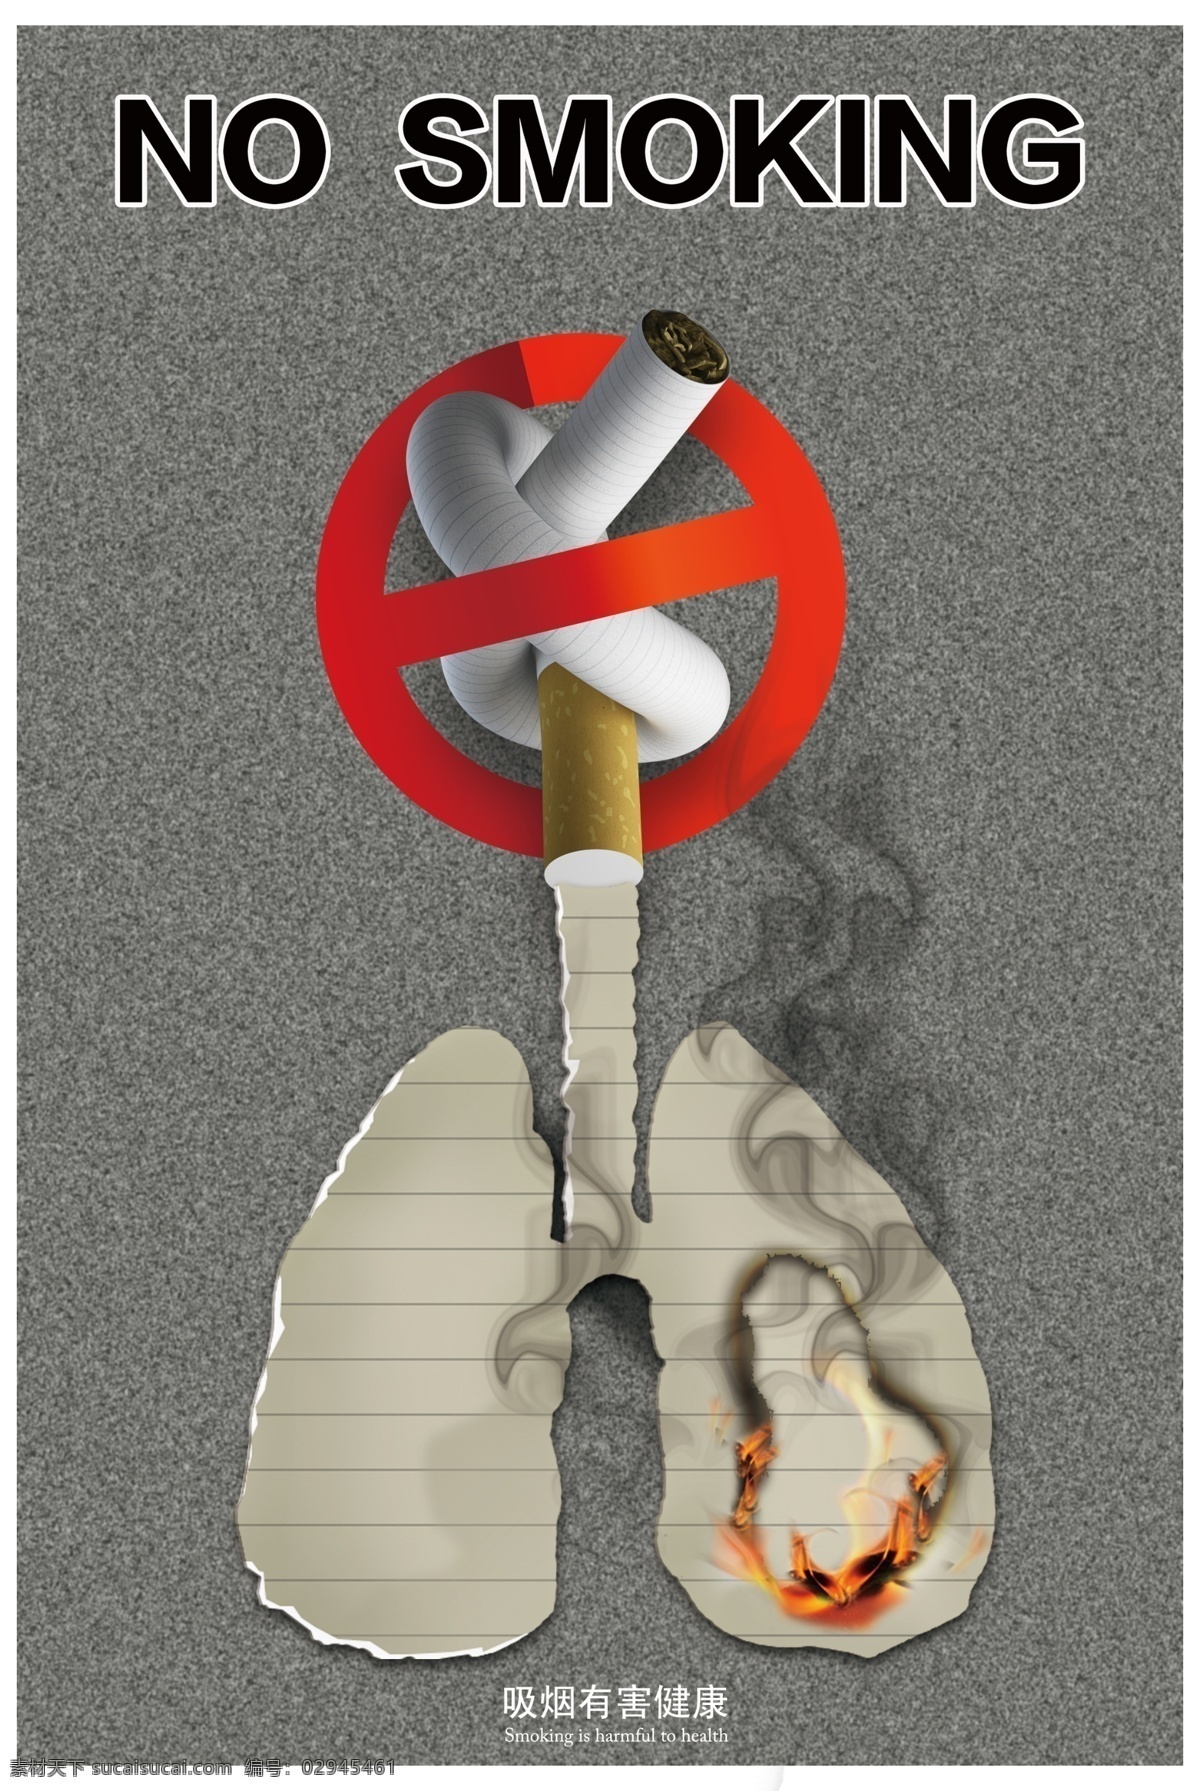 禁止吸烟海报 吸烟有害健康 禁止吸烟 公益广告 吸烟的危害 请勿吸烟